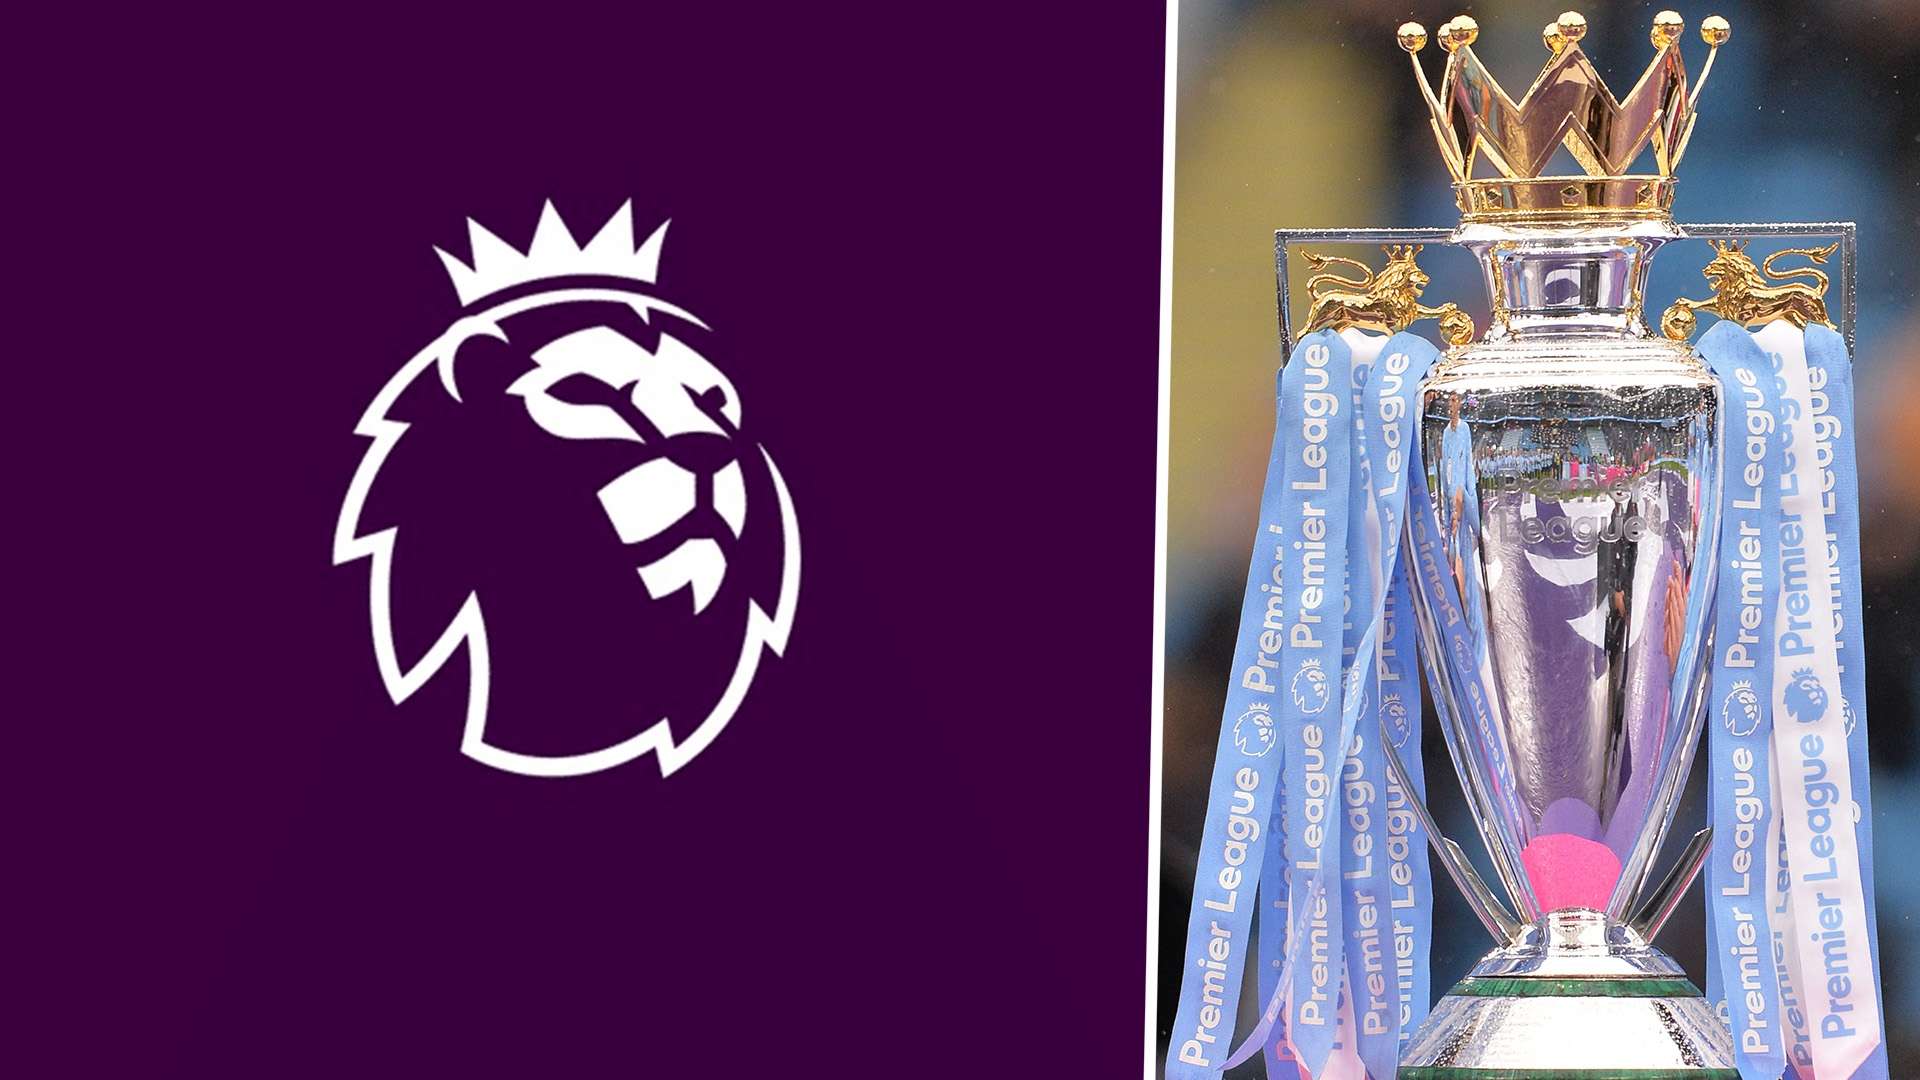 Premier League logo & trophy